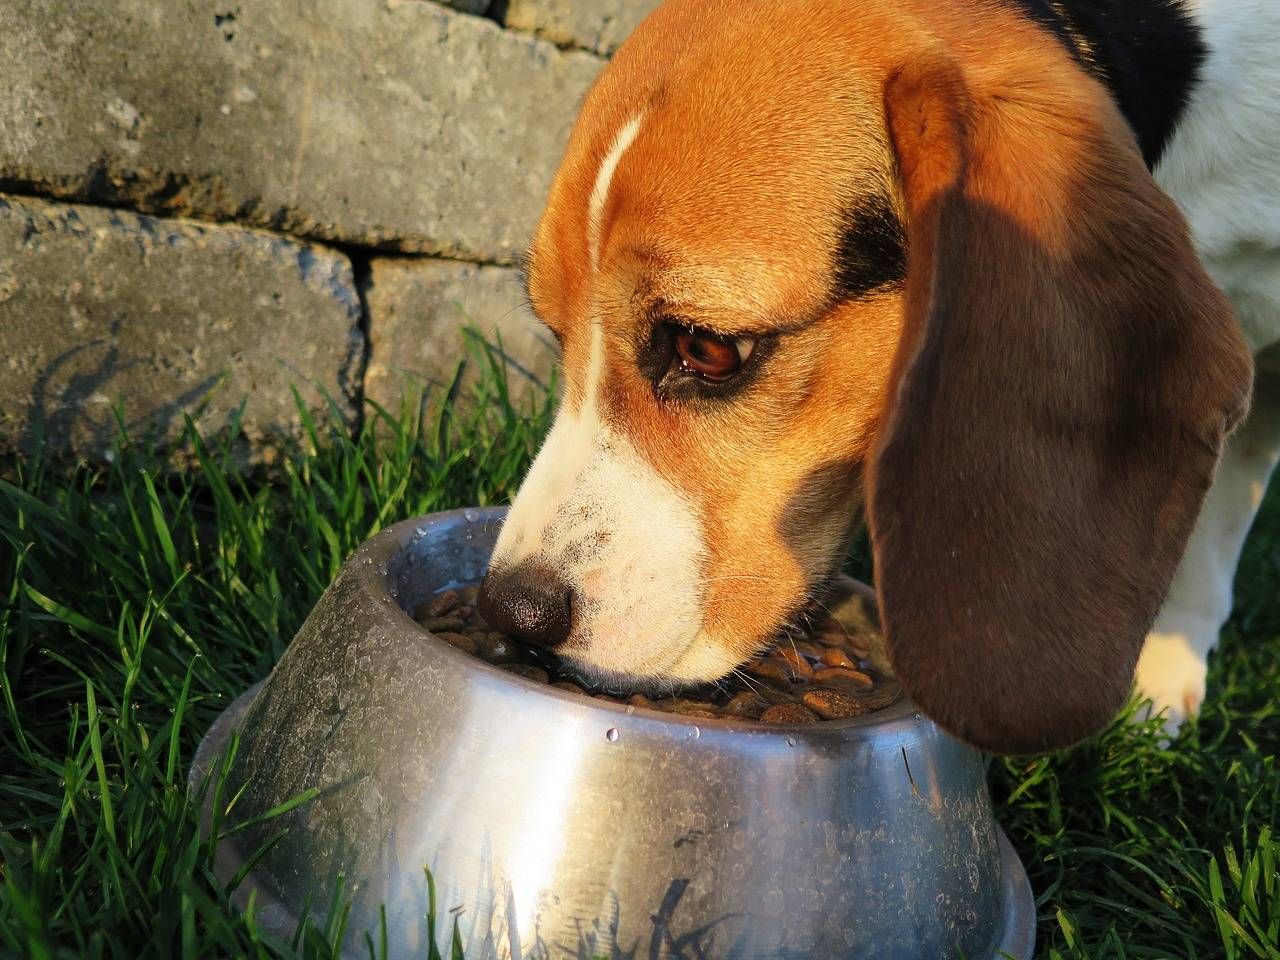 Hund frisst Hundefutter - was passiert bei einer Futtermittelallergie?